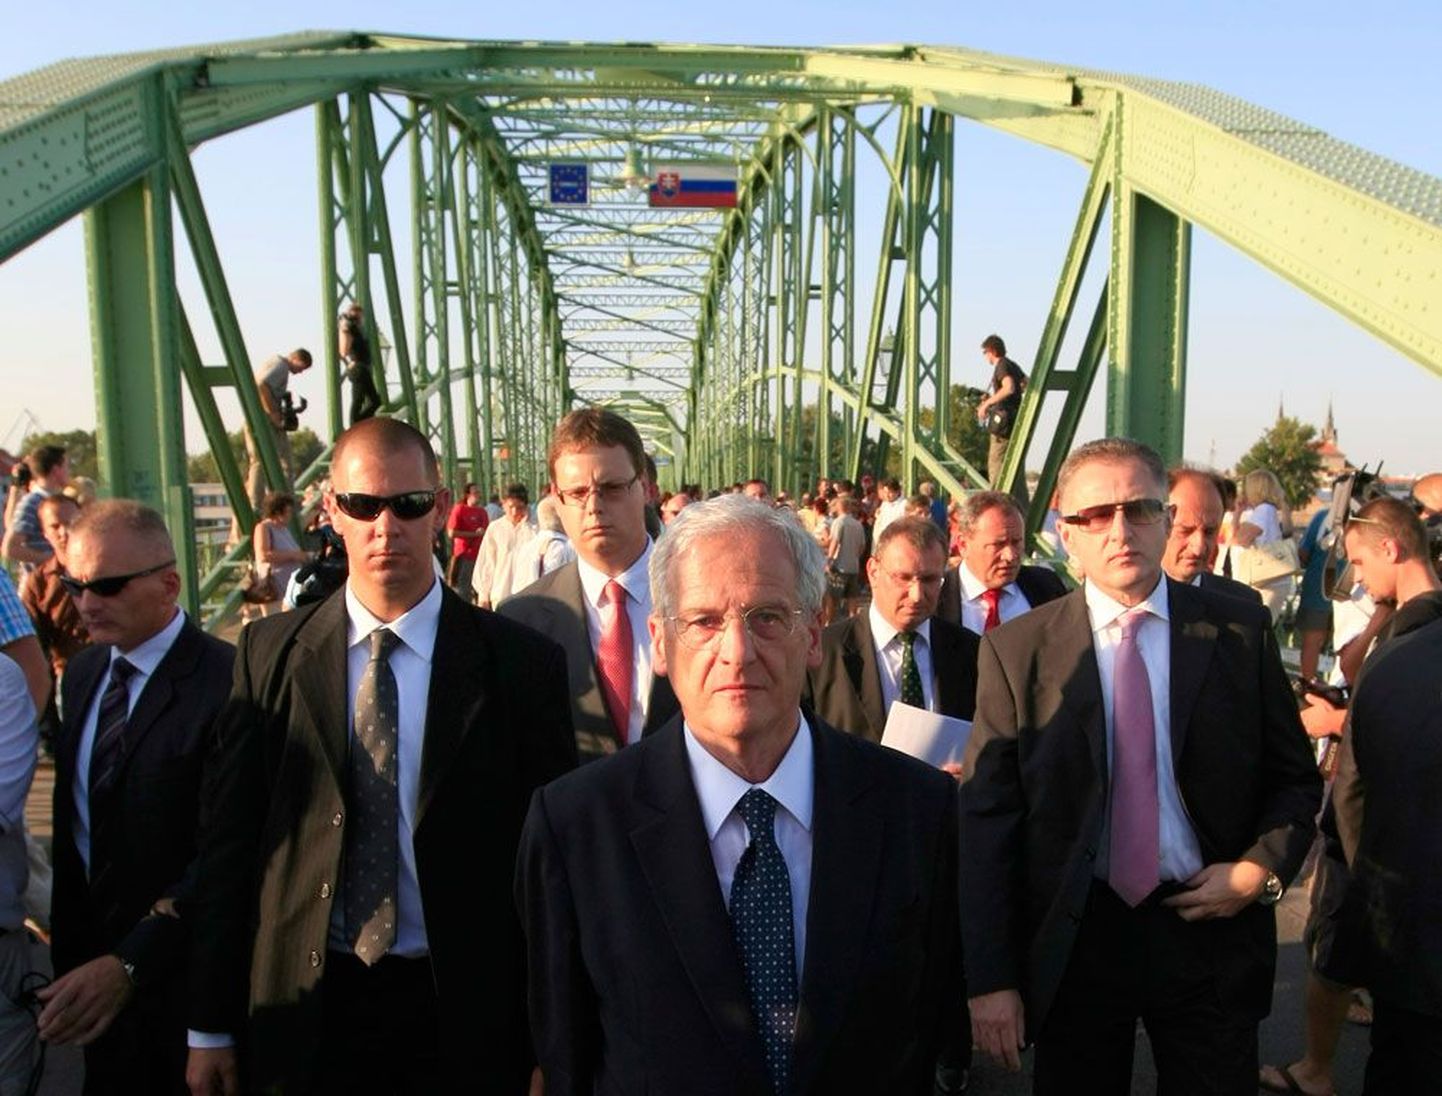 Ungari president Laszlo Solyom marssis möödunud reedel demonstratiivselt mööda silda Slovakkia piirini ja tagasi, teatades ajakirjanikele, et naaberriigi välisministeerium on ta tunnistanud julgeolekuriskiks.